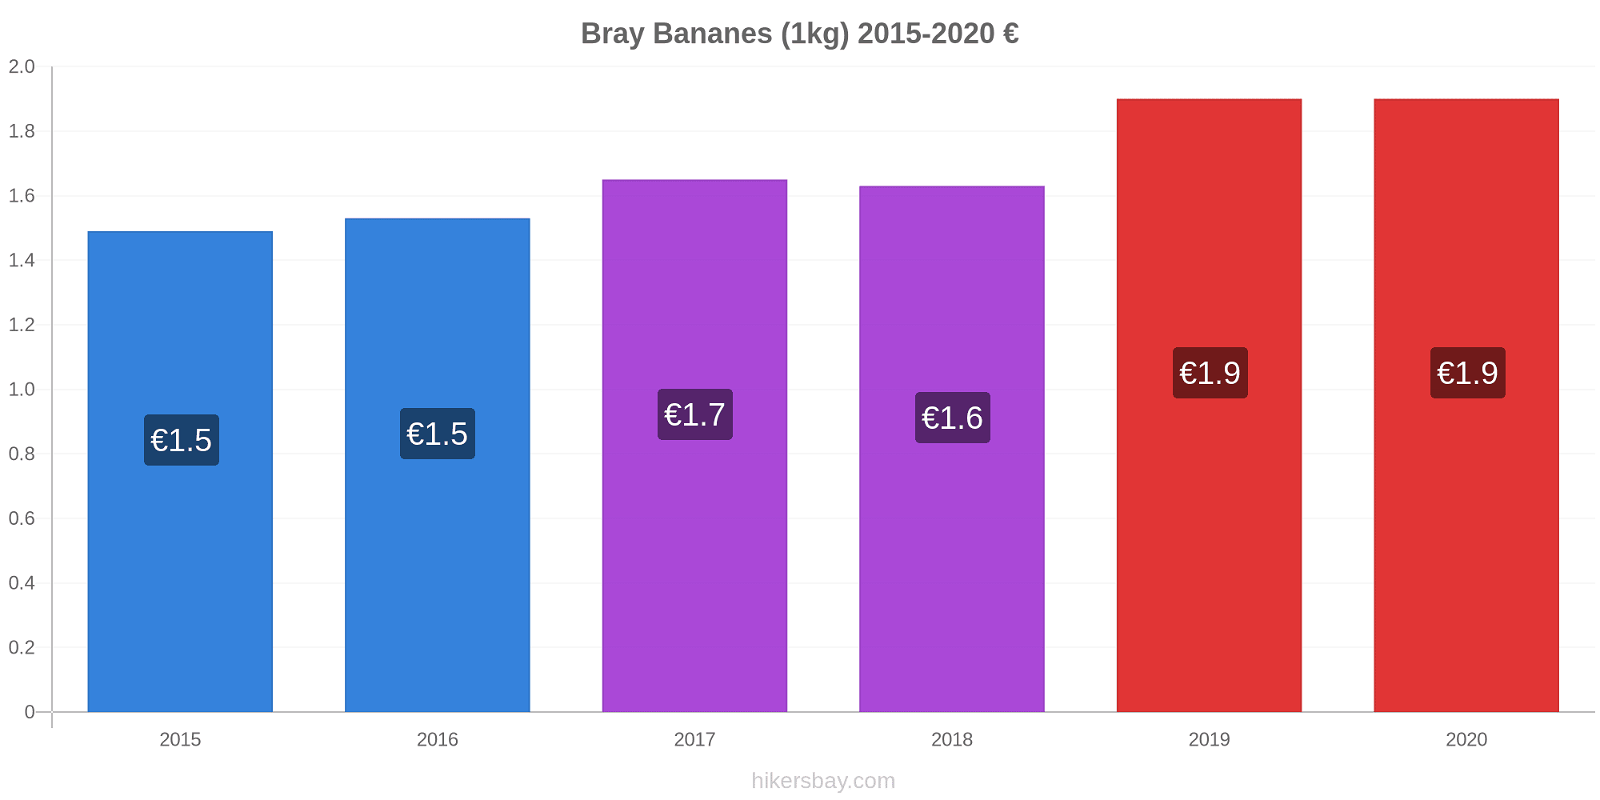 Bray changements de prix Bananes (1kg) hikersbay.com